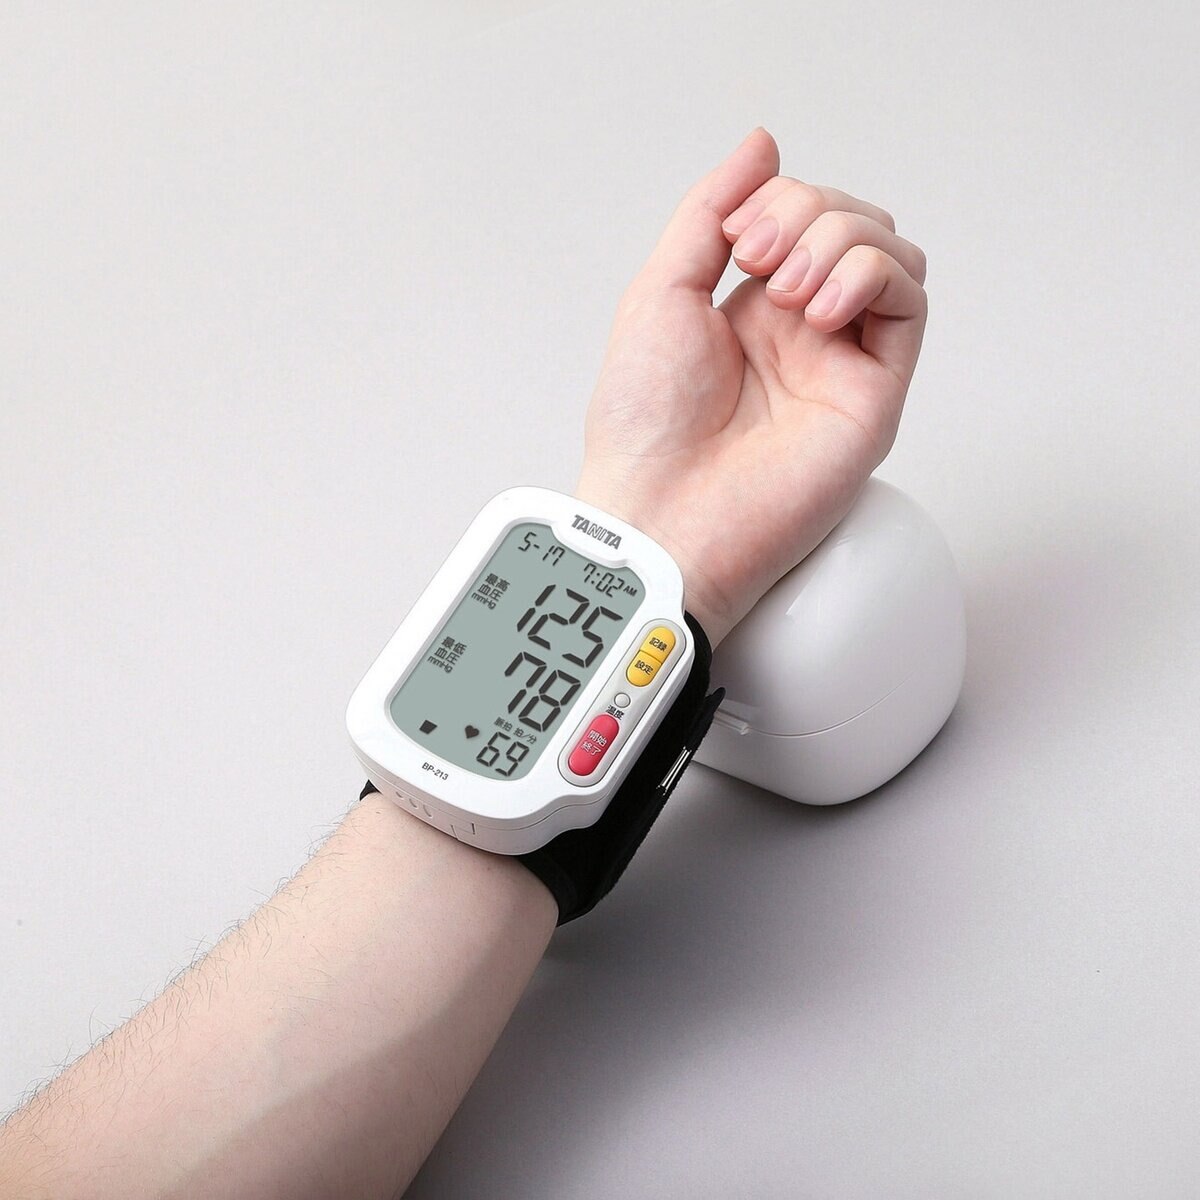 タニタ 手首式血圧計 BP213